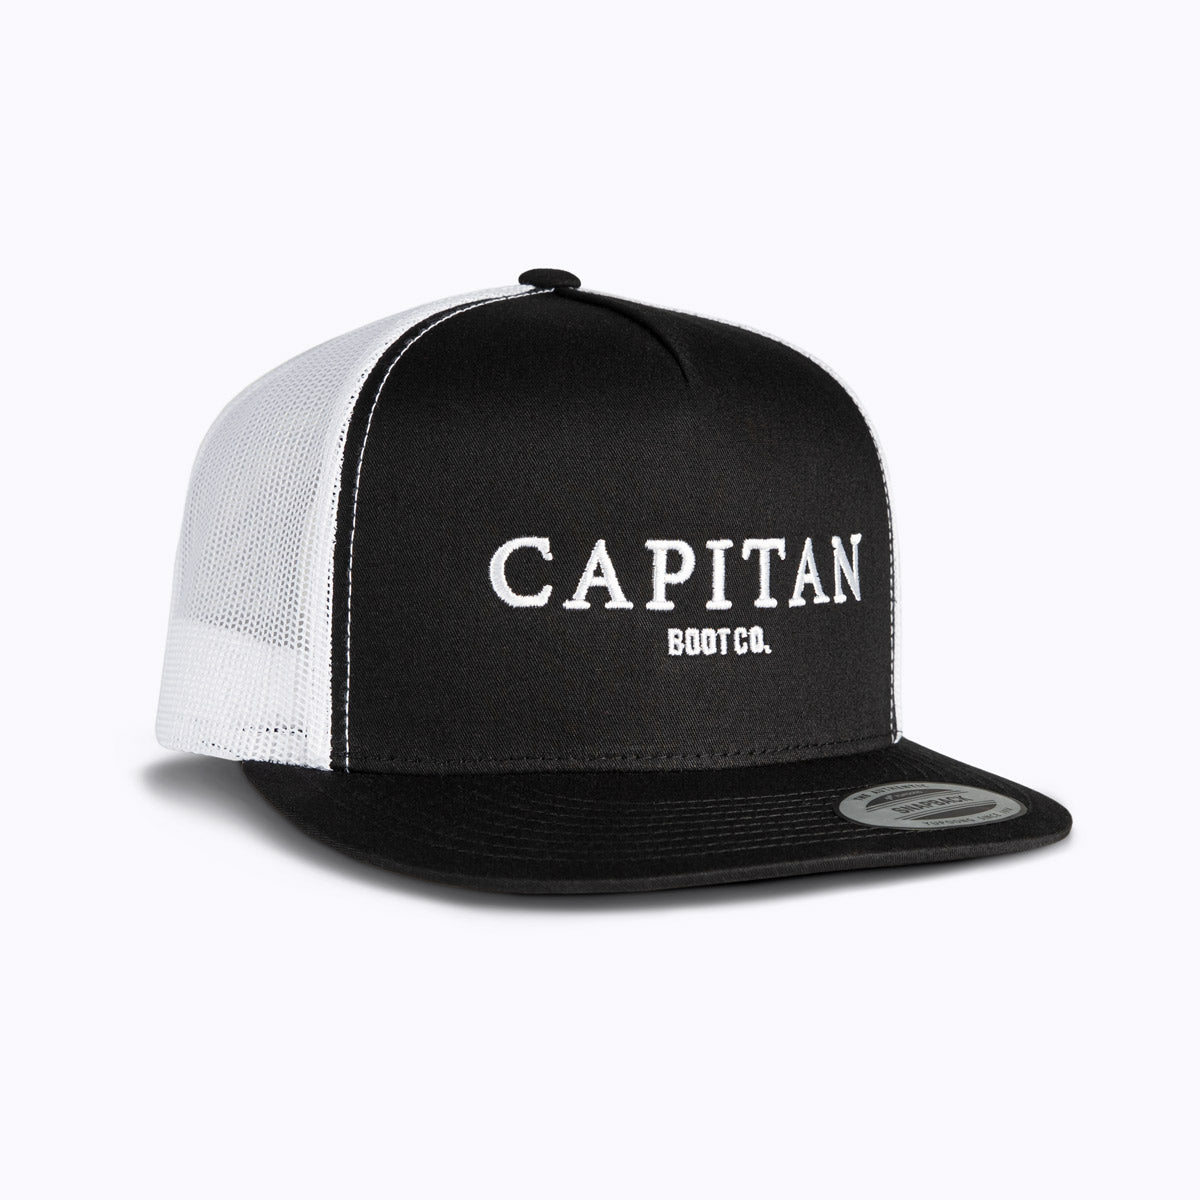 Boot Co Cap Black Cap - Capitan Boots